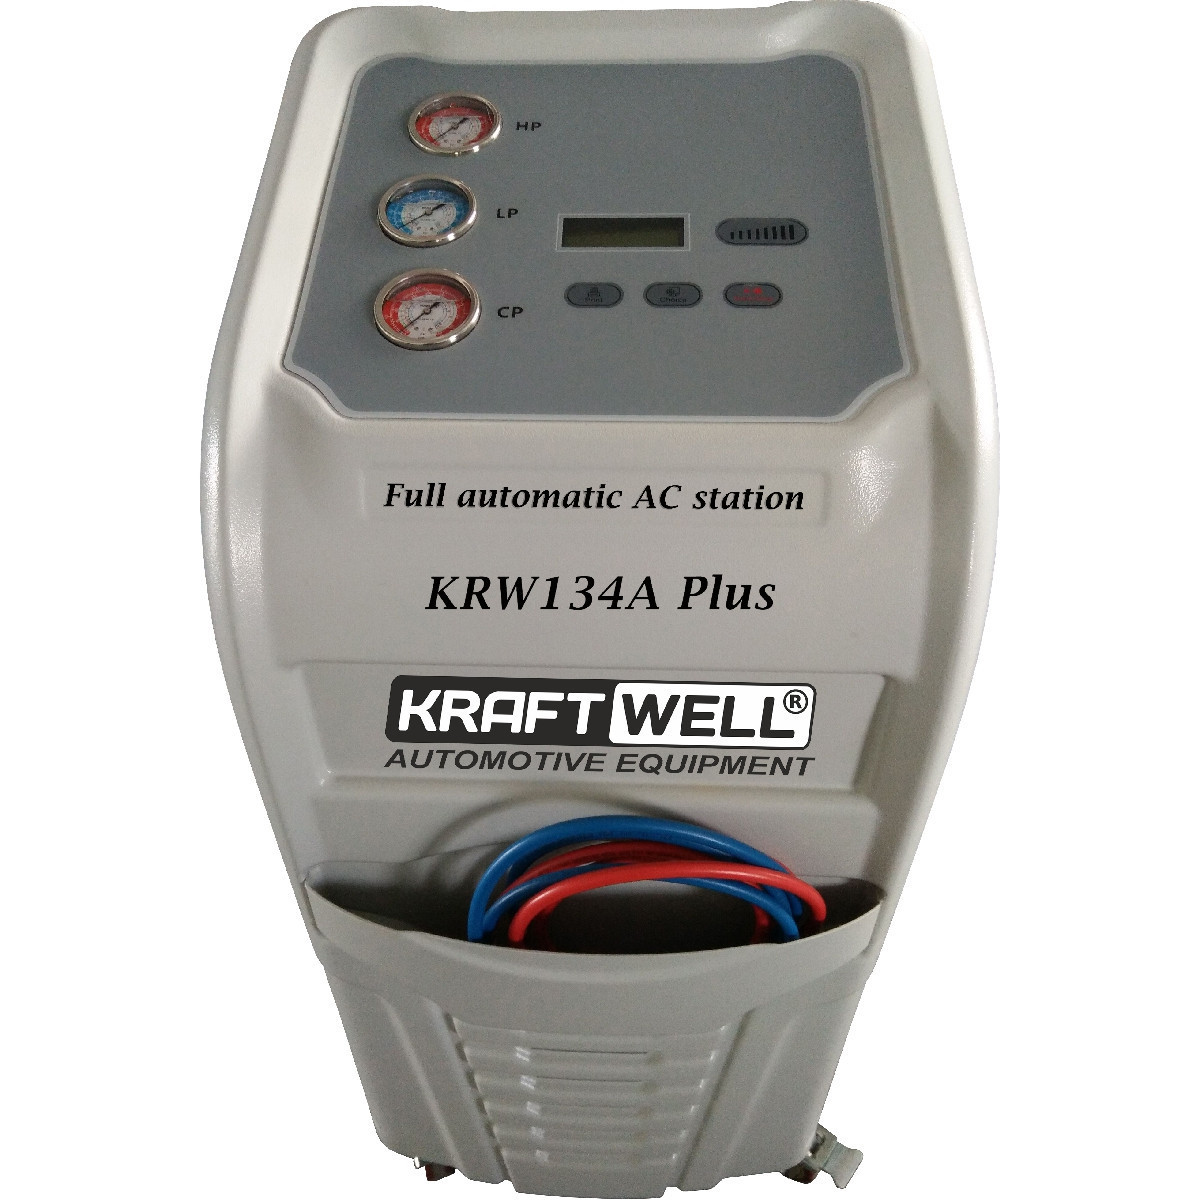 KRAFTWELL KraftWell KRW134A Plus автоматическая станция для заправки автомобильных кондиционеров